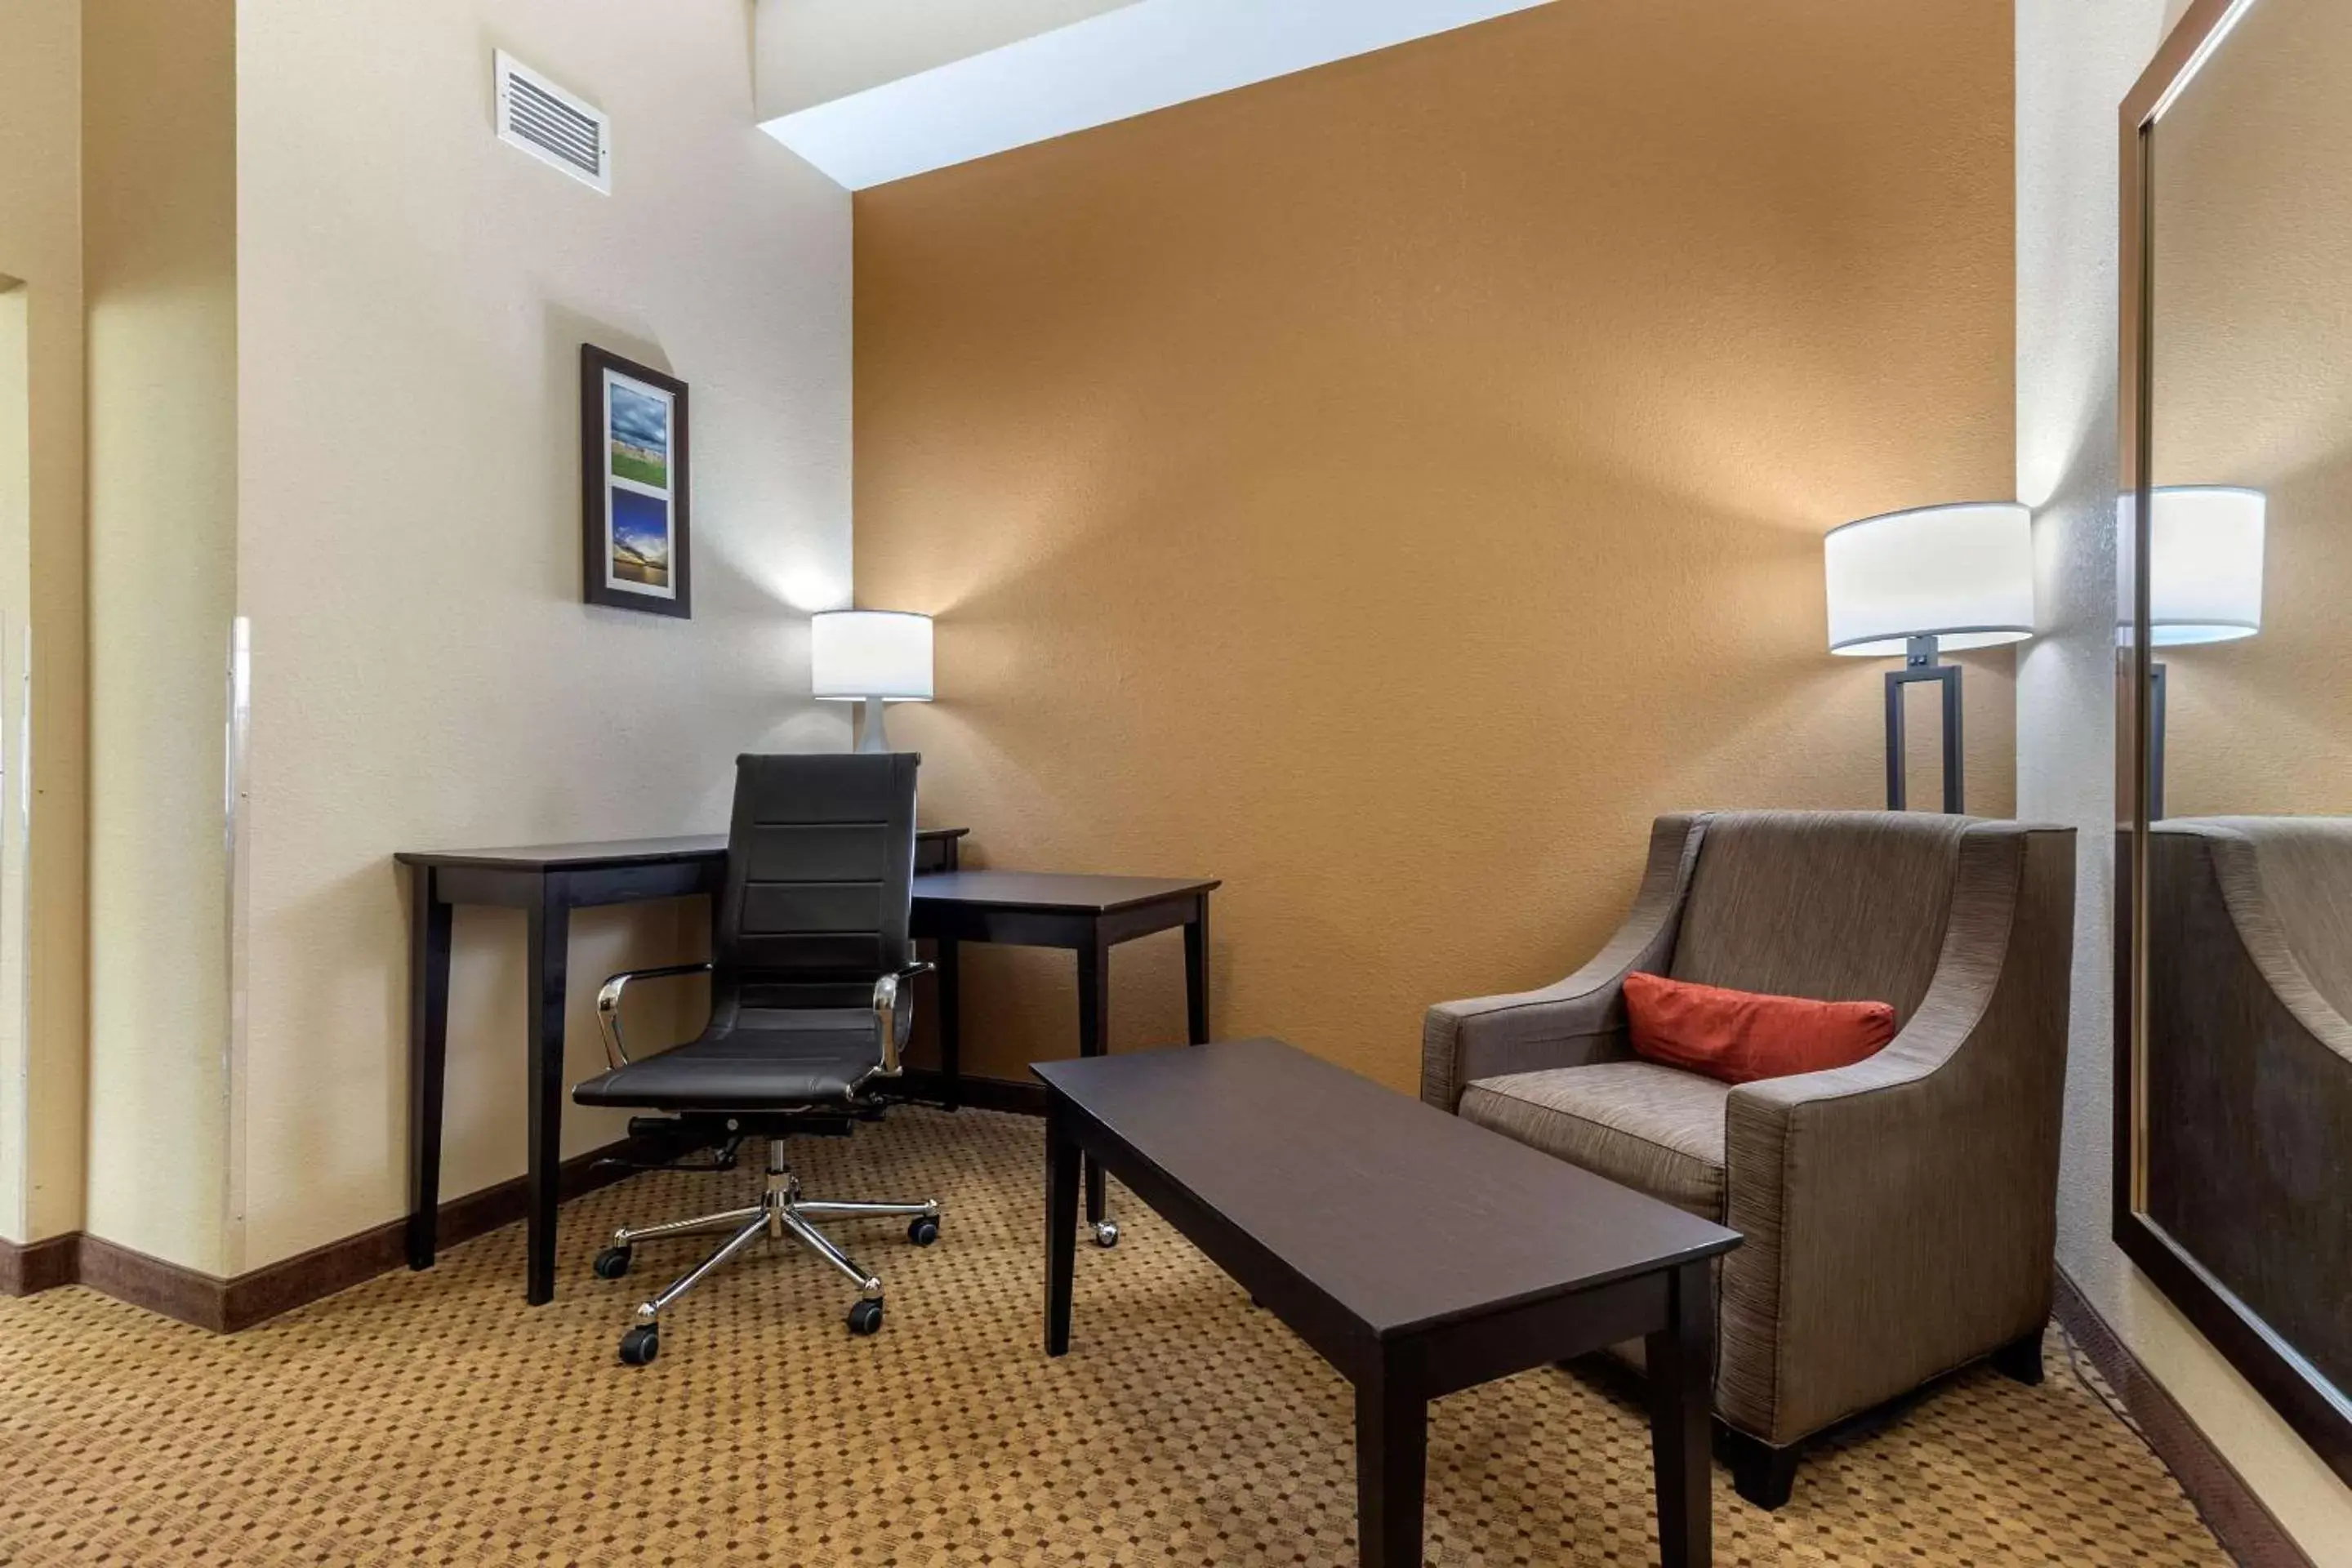 Bedroom, Seating Area in Comfort Inn & Suites Kenosha